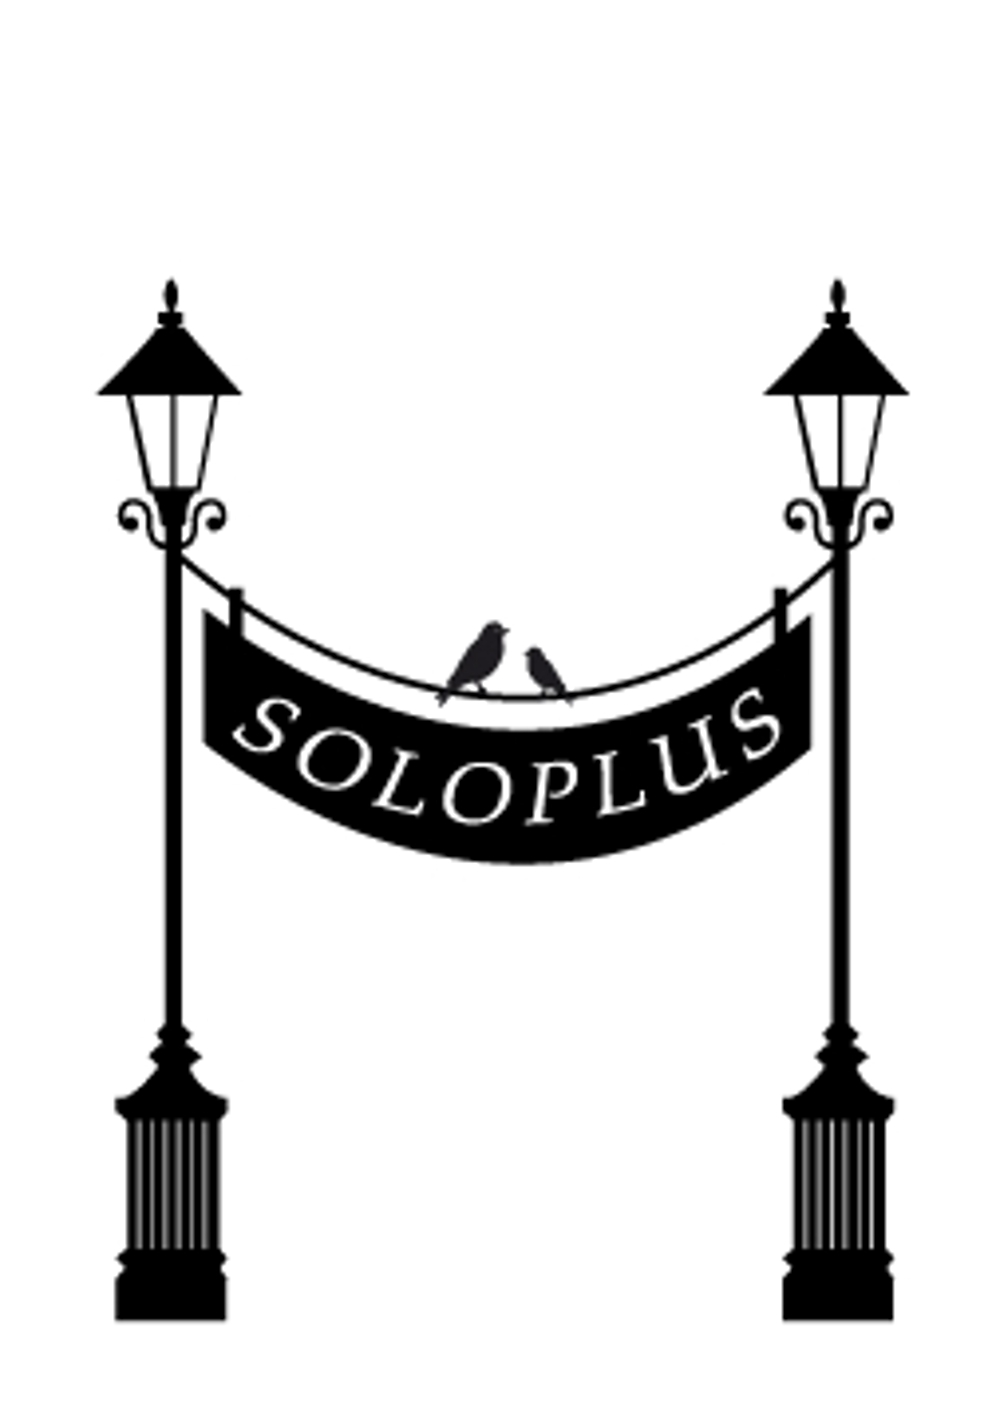 SOLOPLUS2.jpg